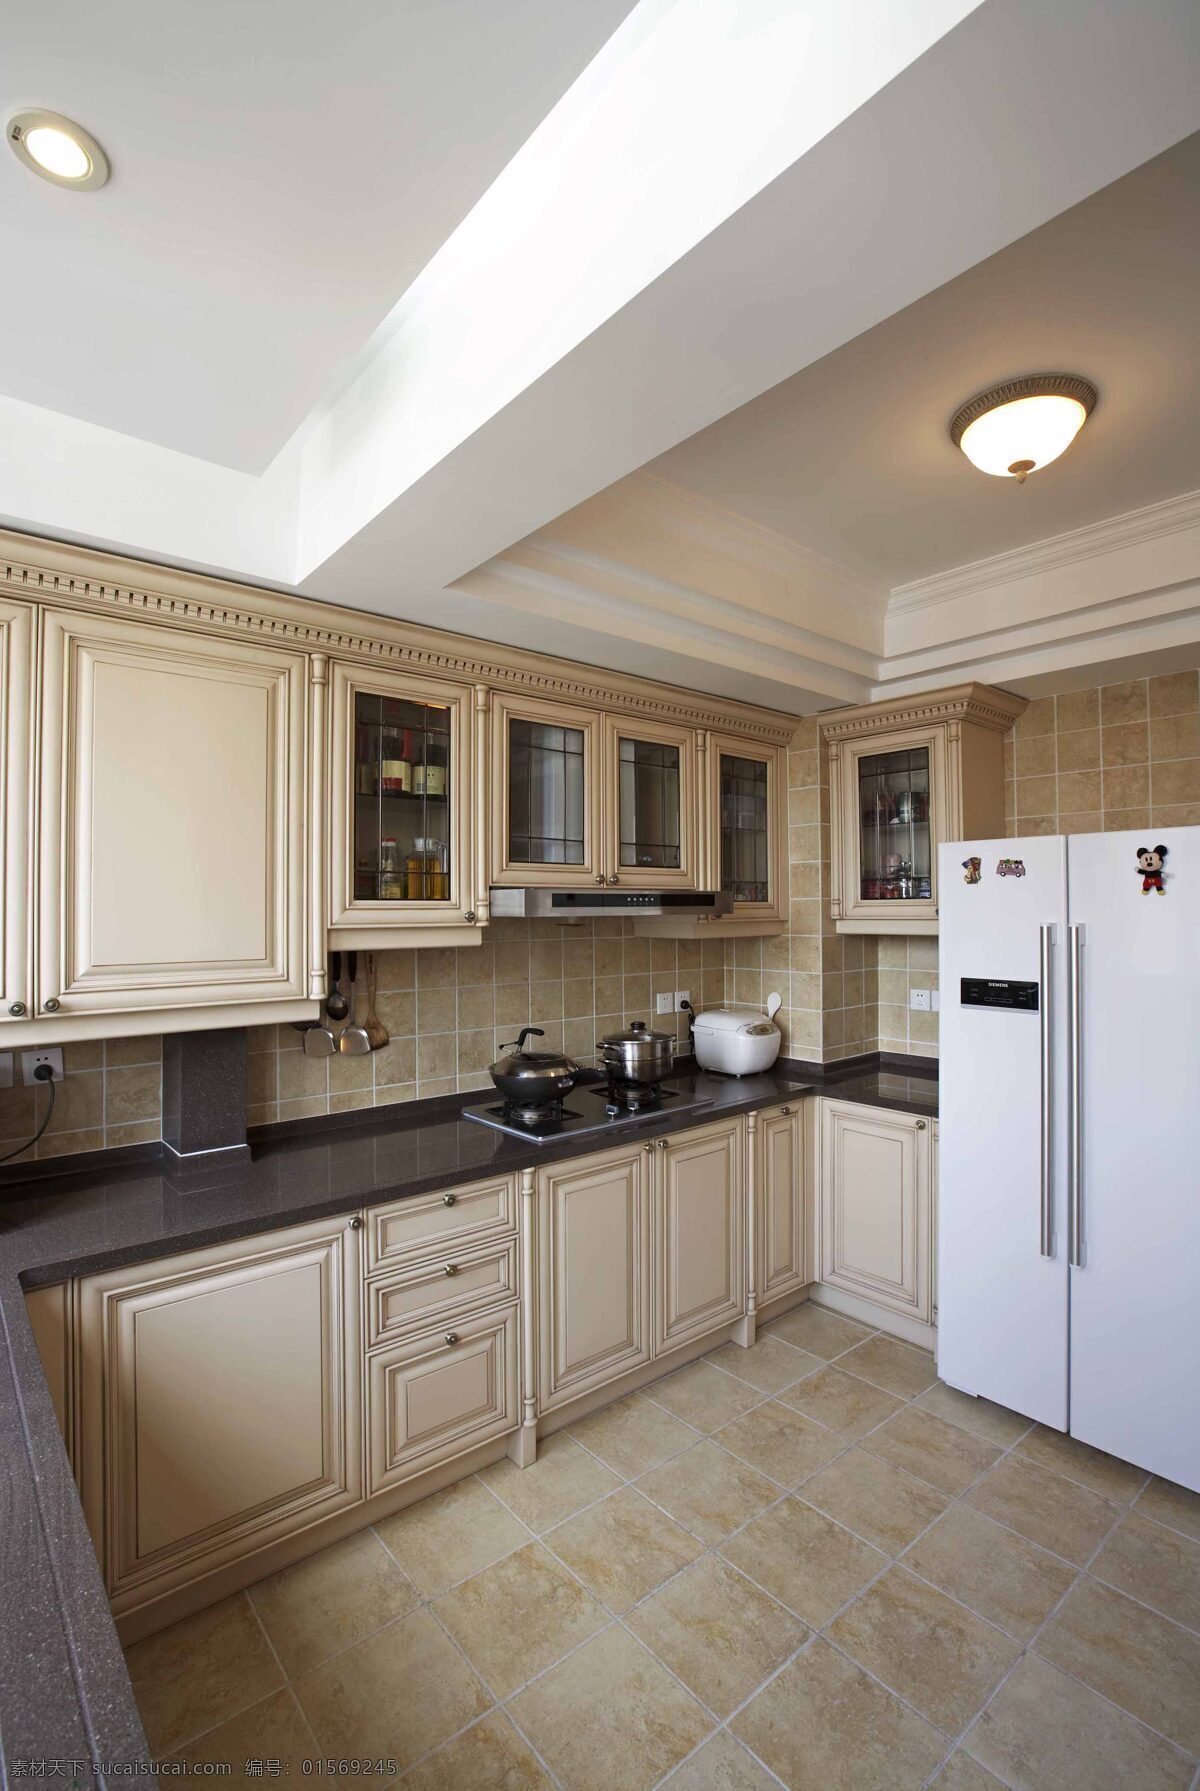 现代 简约 风 室内设计 厨房 地板 效果图 料理台 壁柜 吊柜 地砖 冰箱 家装